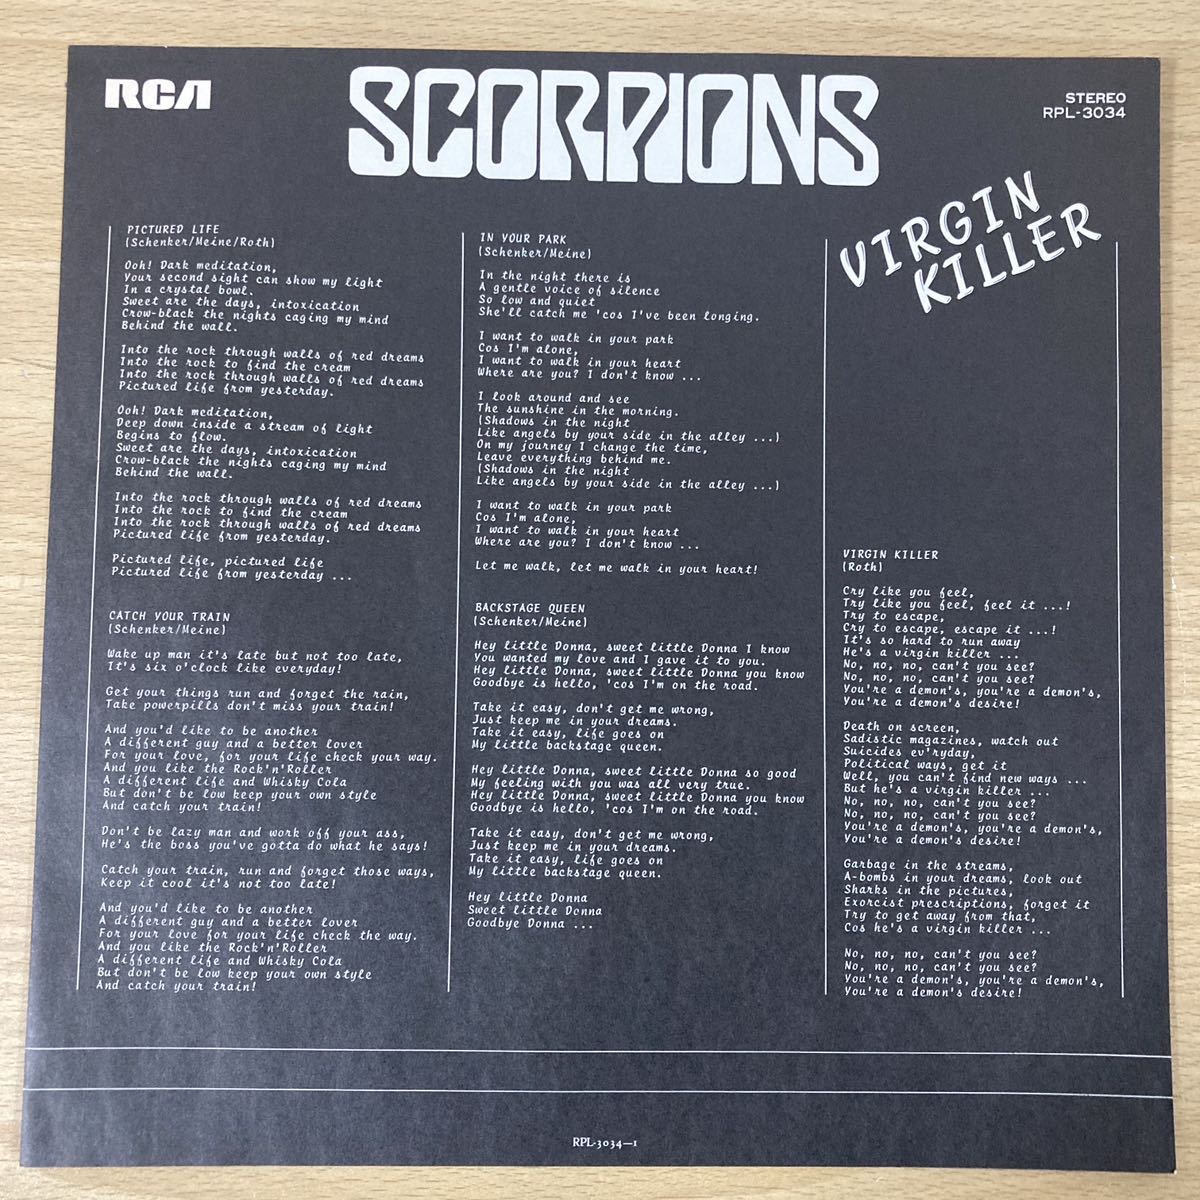 SCORPIONS スコーピオンズ 狂熱の蠍団 VIRGIN KILLER ヴァージンキラー ハードロック レンタル落ち レコード レコード盤 LP盤 11 カ 5988_画像3